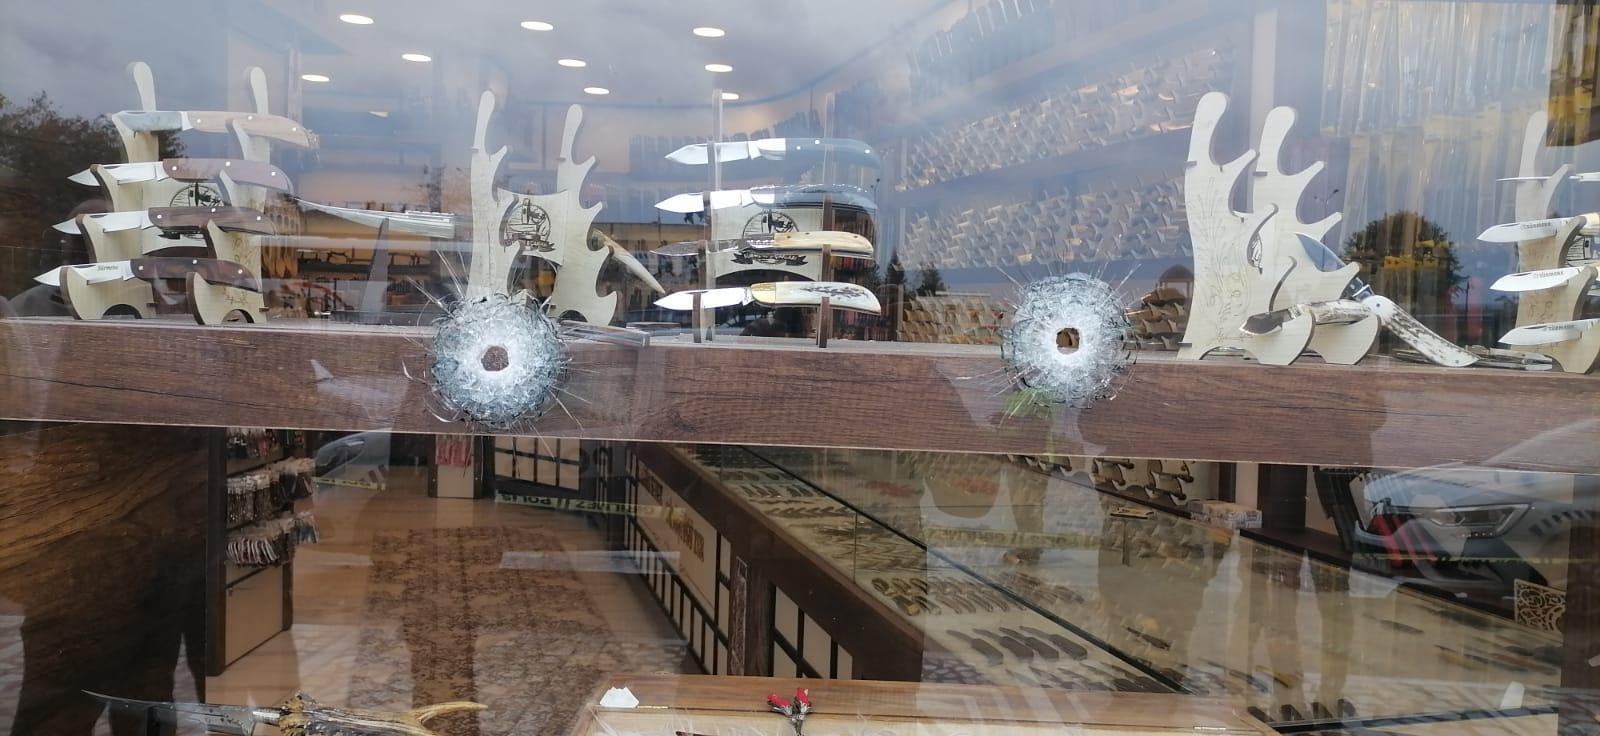 Trabzonda oda başkanının iş yerine silahlı saldırı; olay anı kamerada